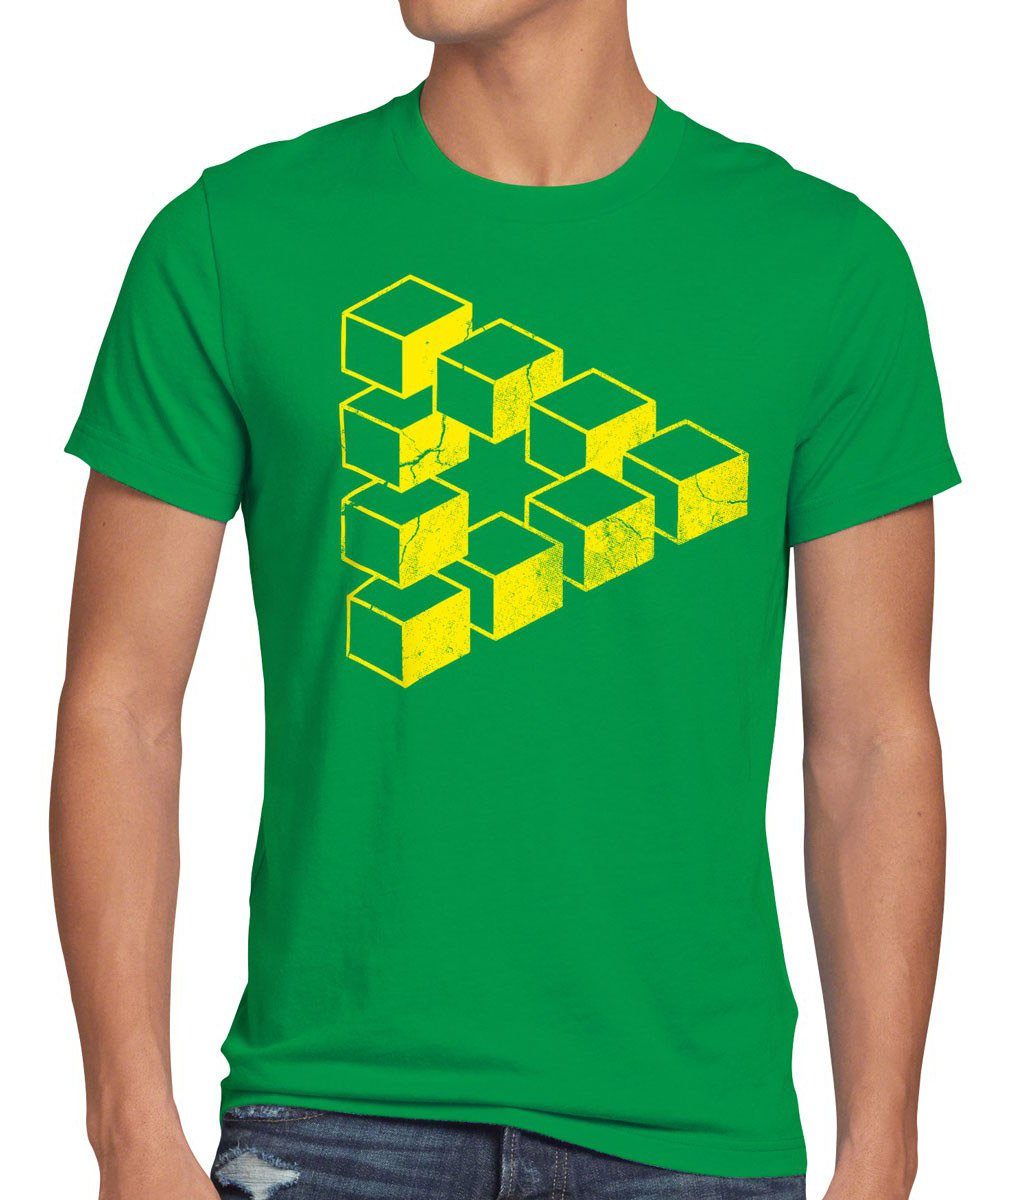 Print-Shirt Cube Penrose Herren Big T-Shirt Theory Dreieck Escher würfel Cooper bang grün style3 Sheldon